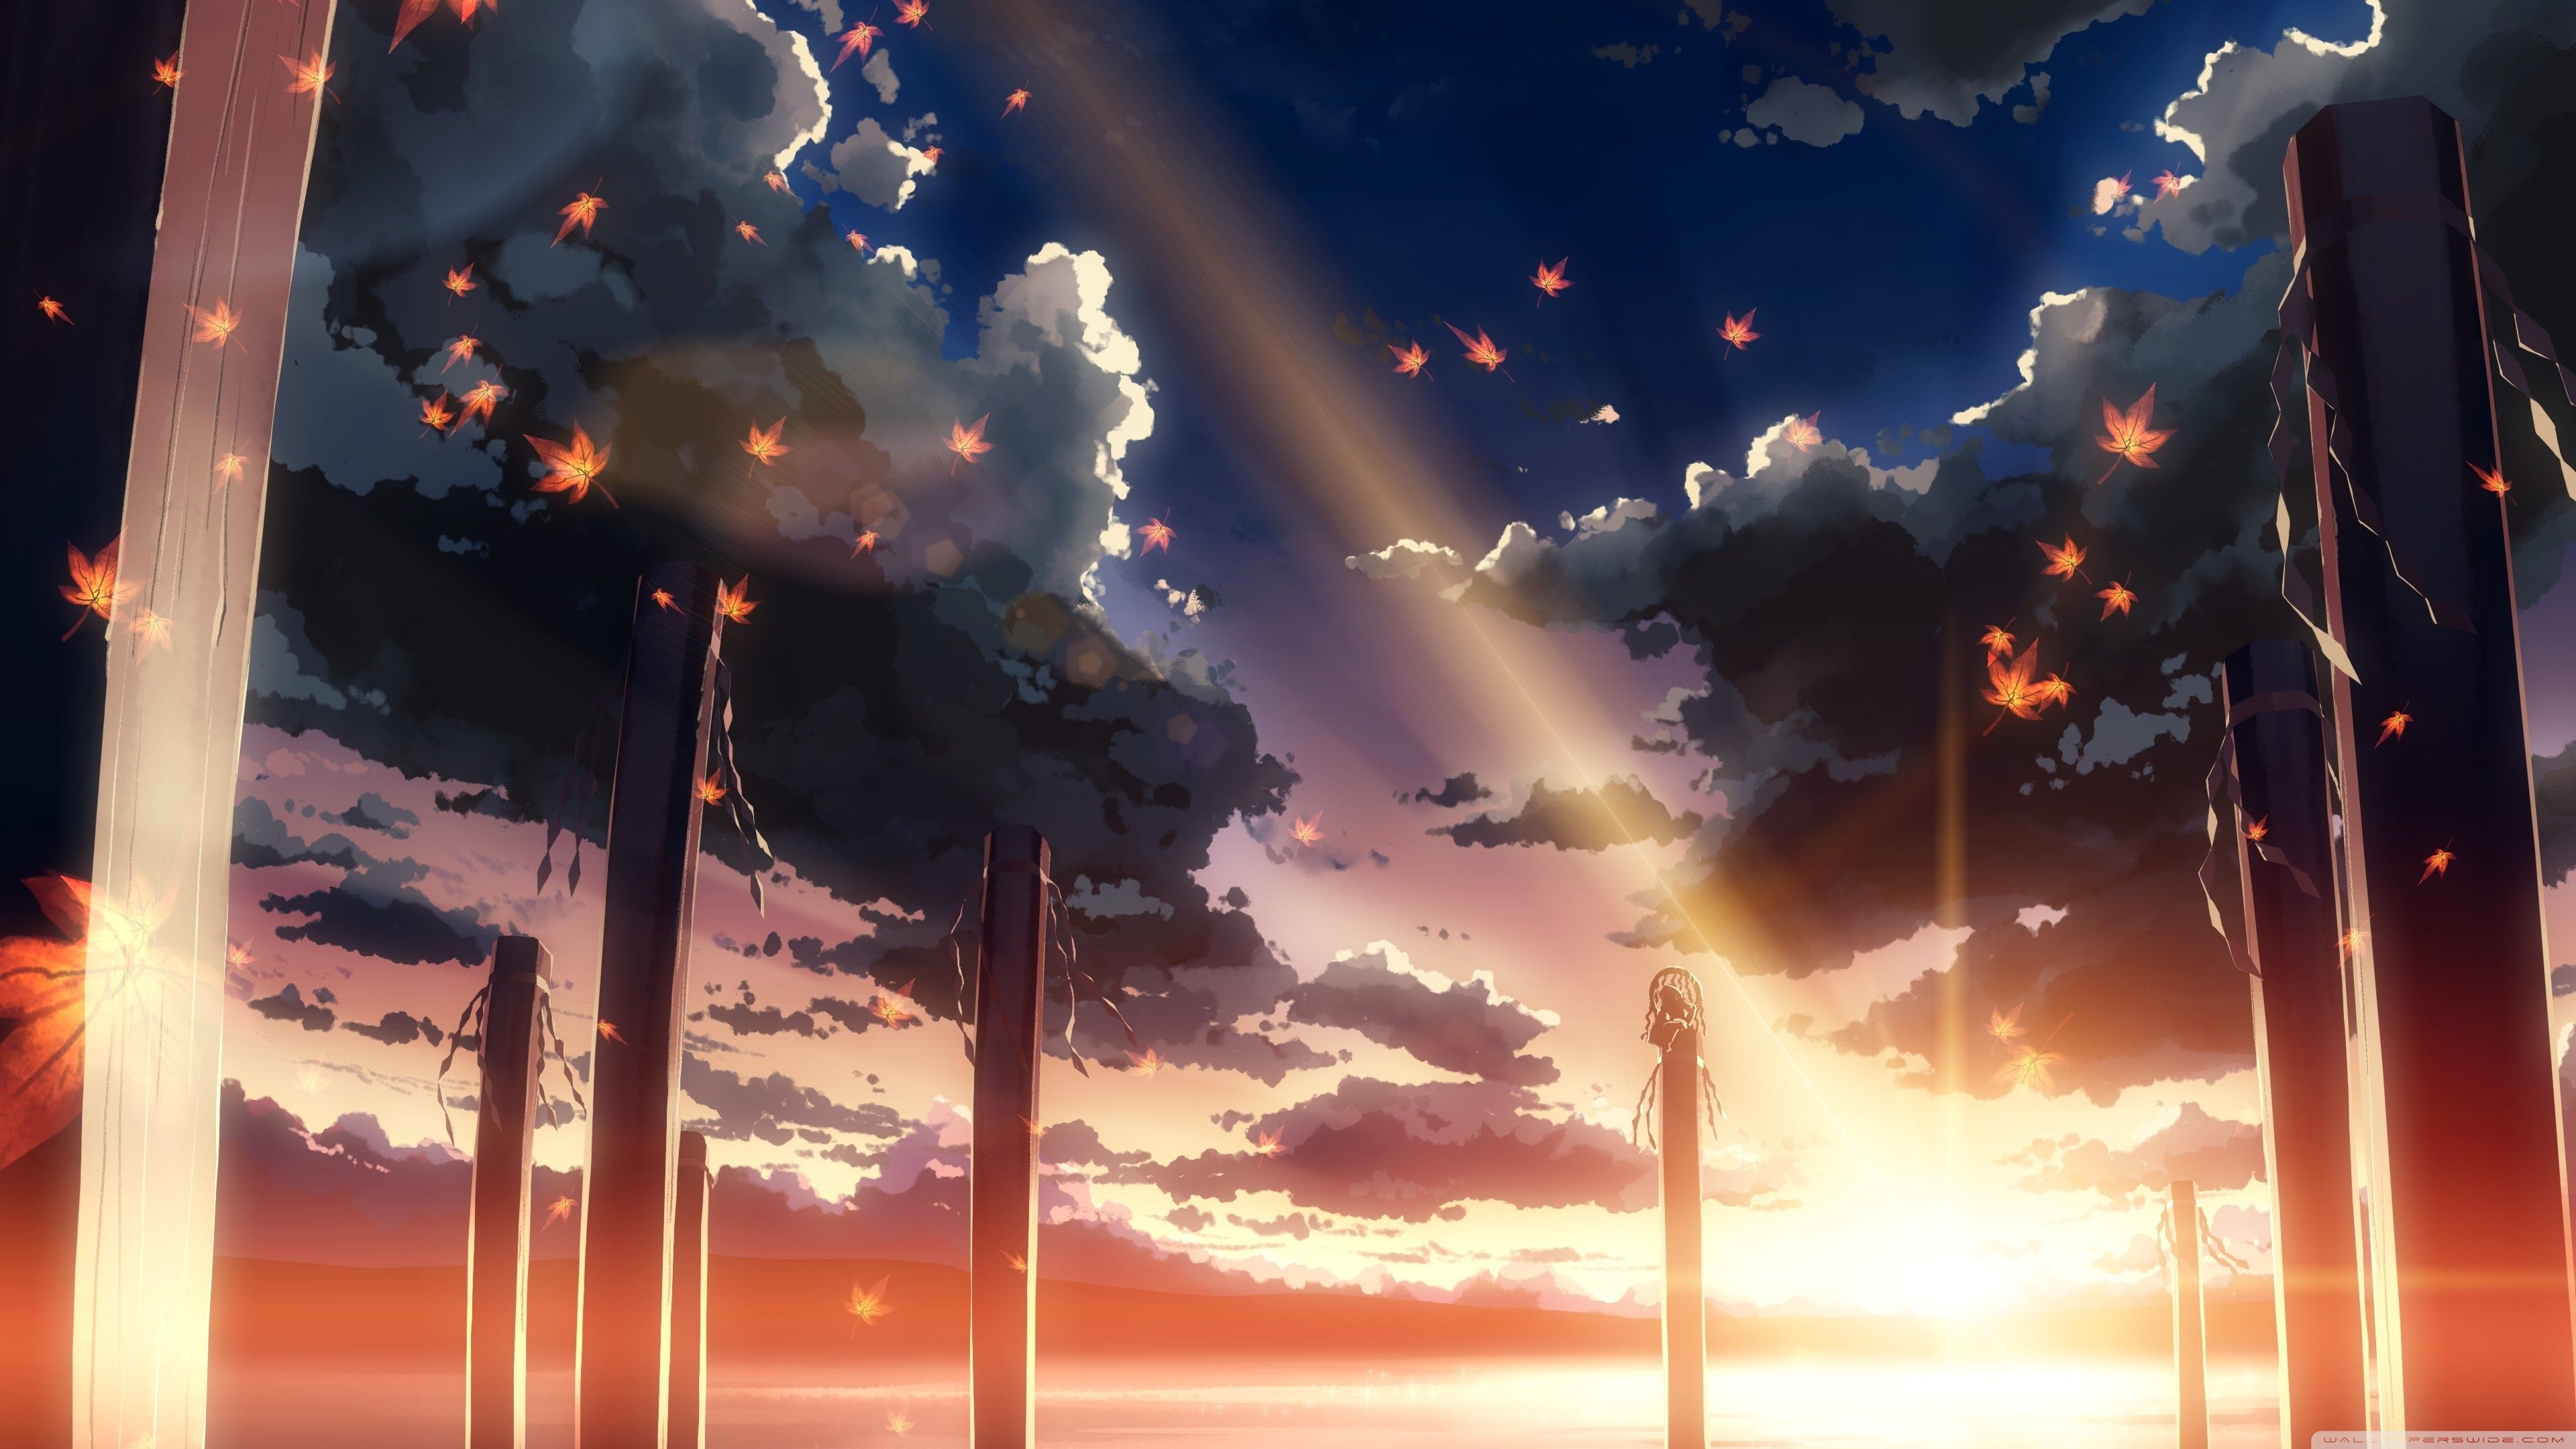 Hình Nền Anime hình nền máy tính anime buồn cảm xúc và tận cùng tâm hồn